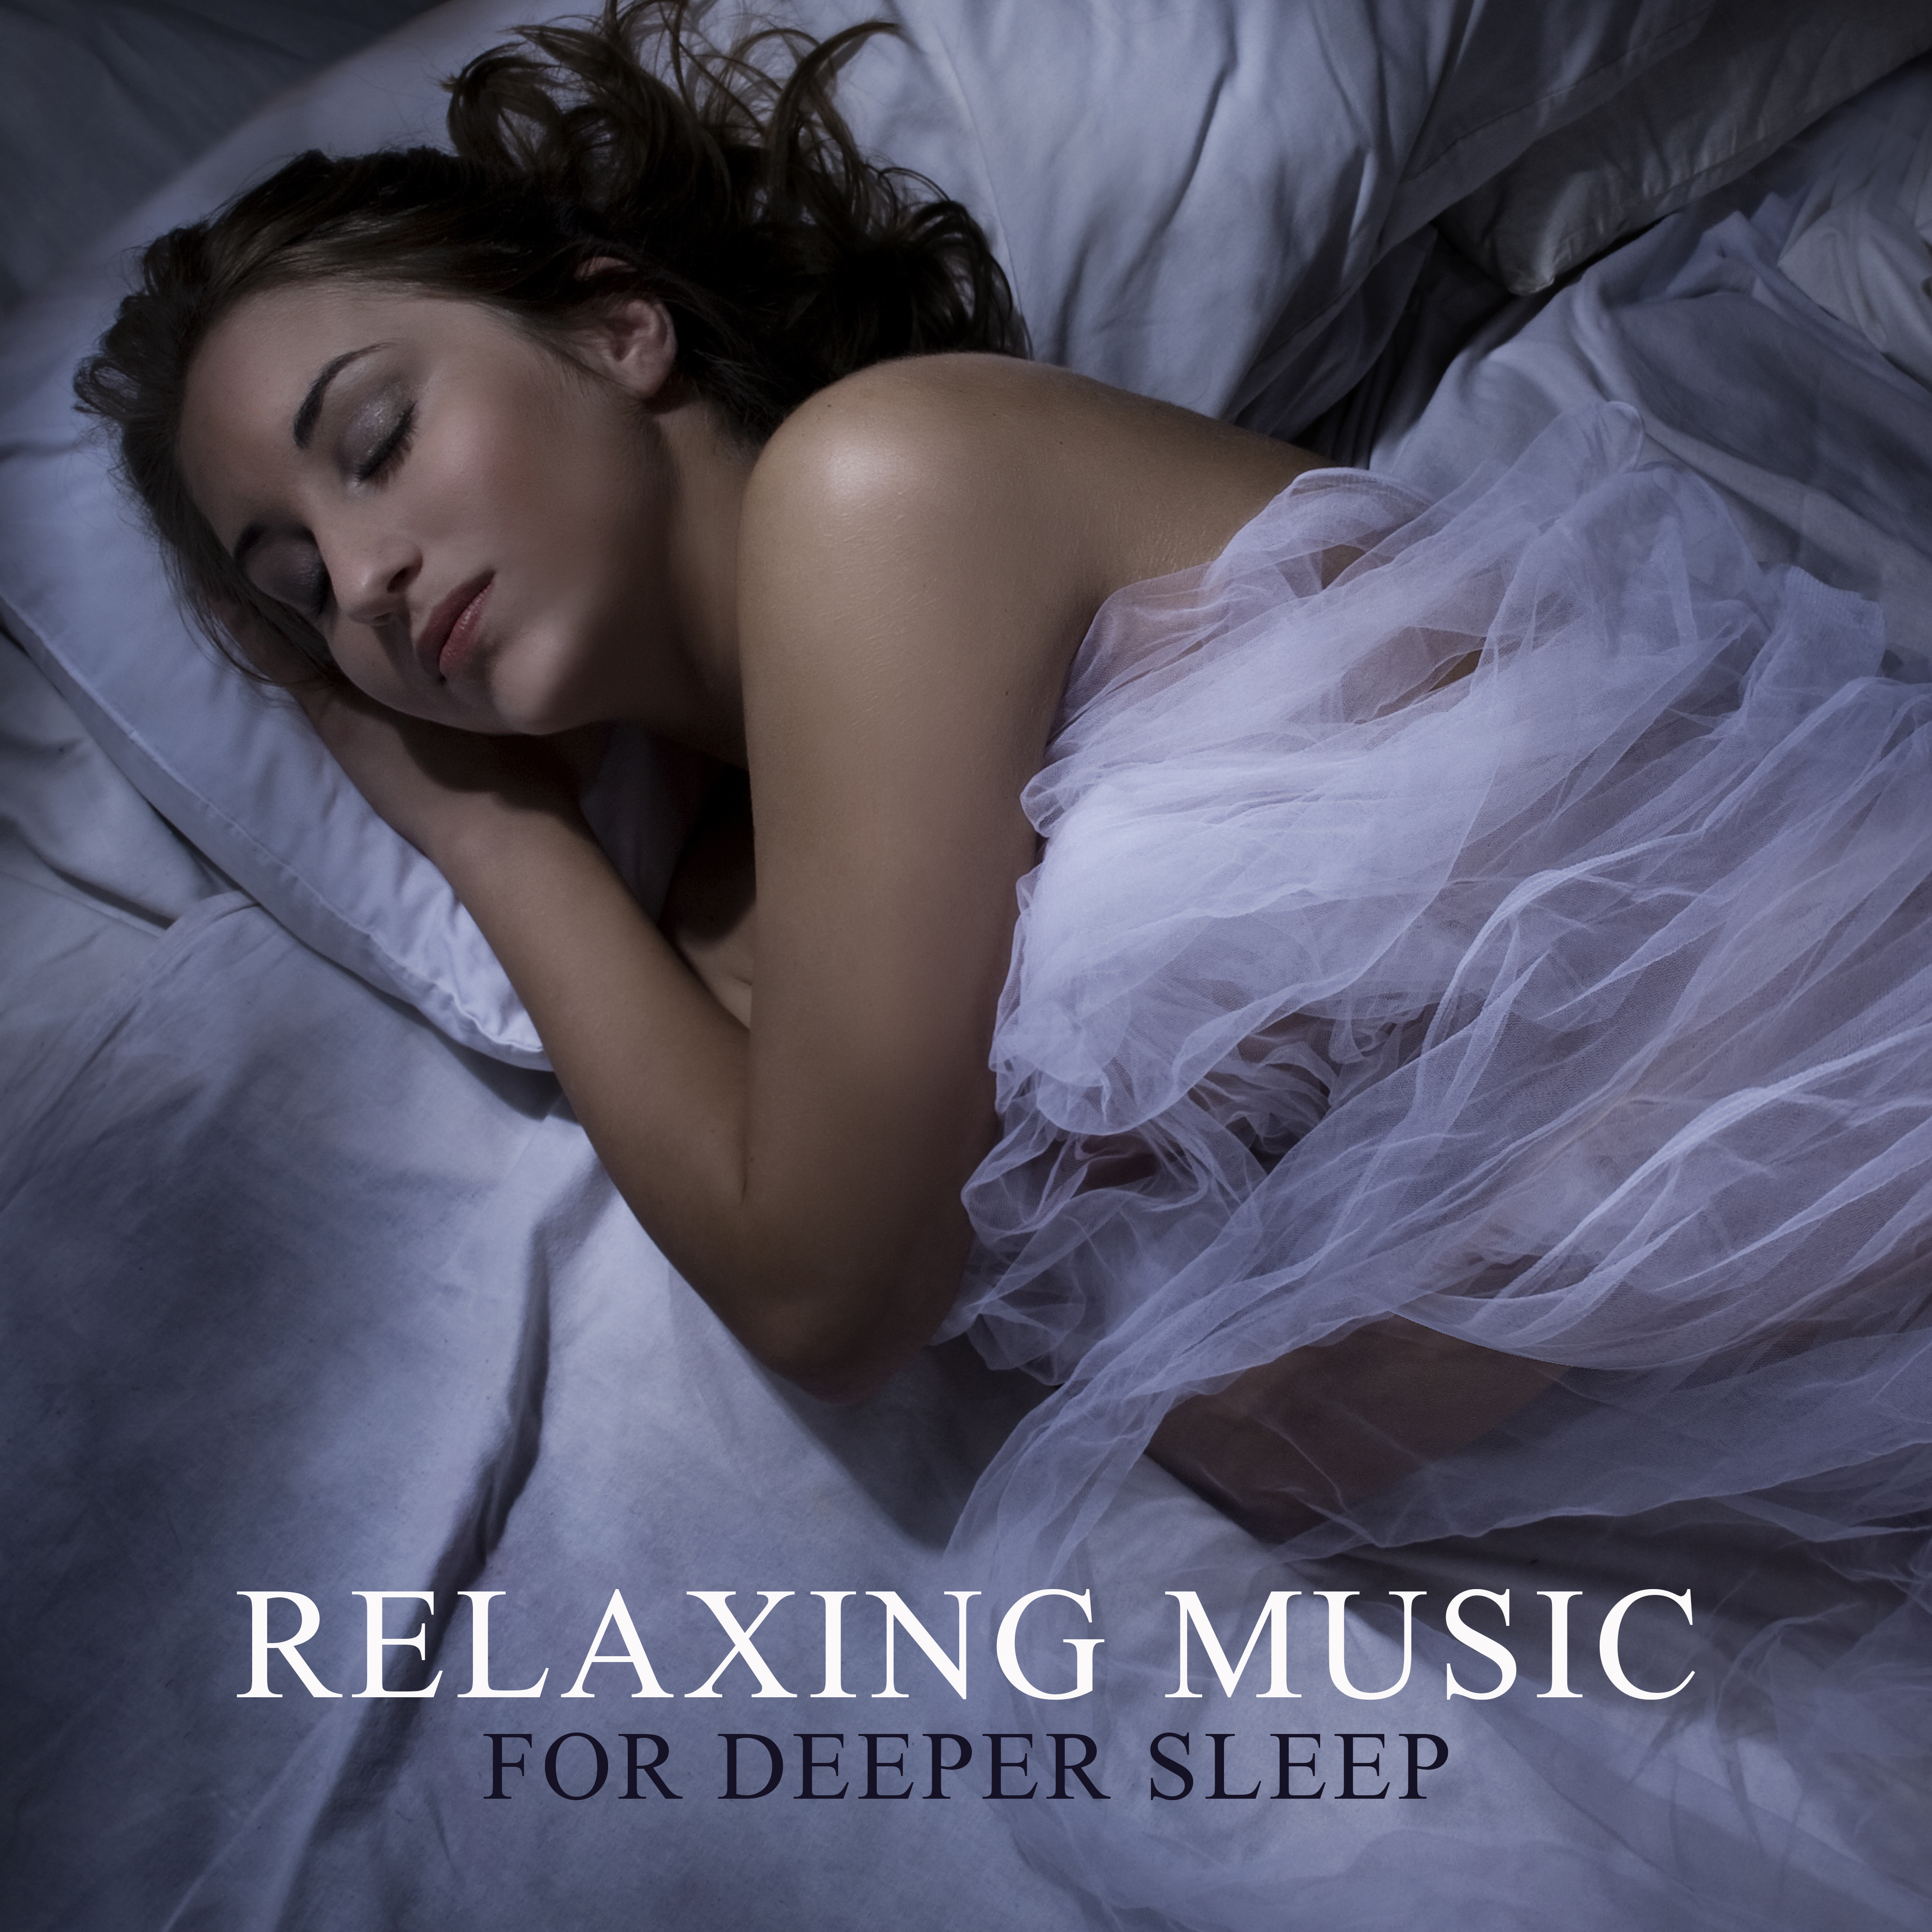 Музыка для сна. Как проснуться в осознанном сне. Ночной уход. Глубокий сон. Музыка девочка с моих снов